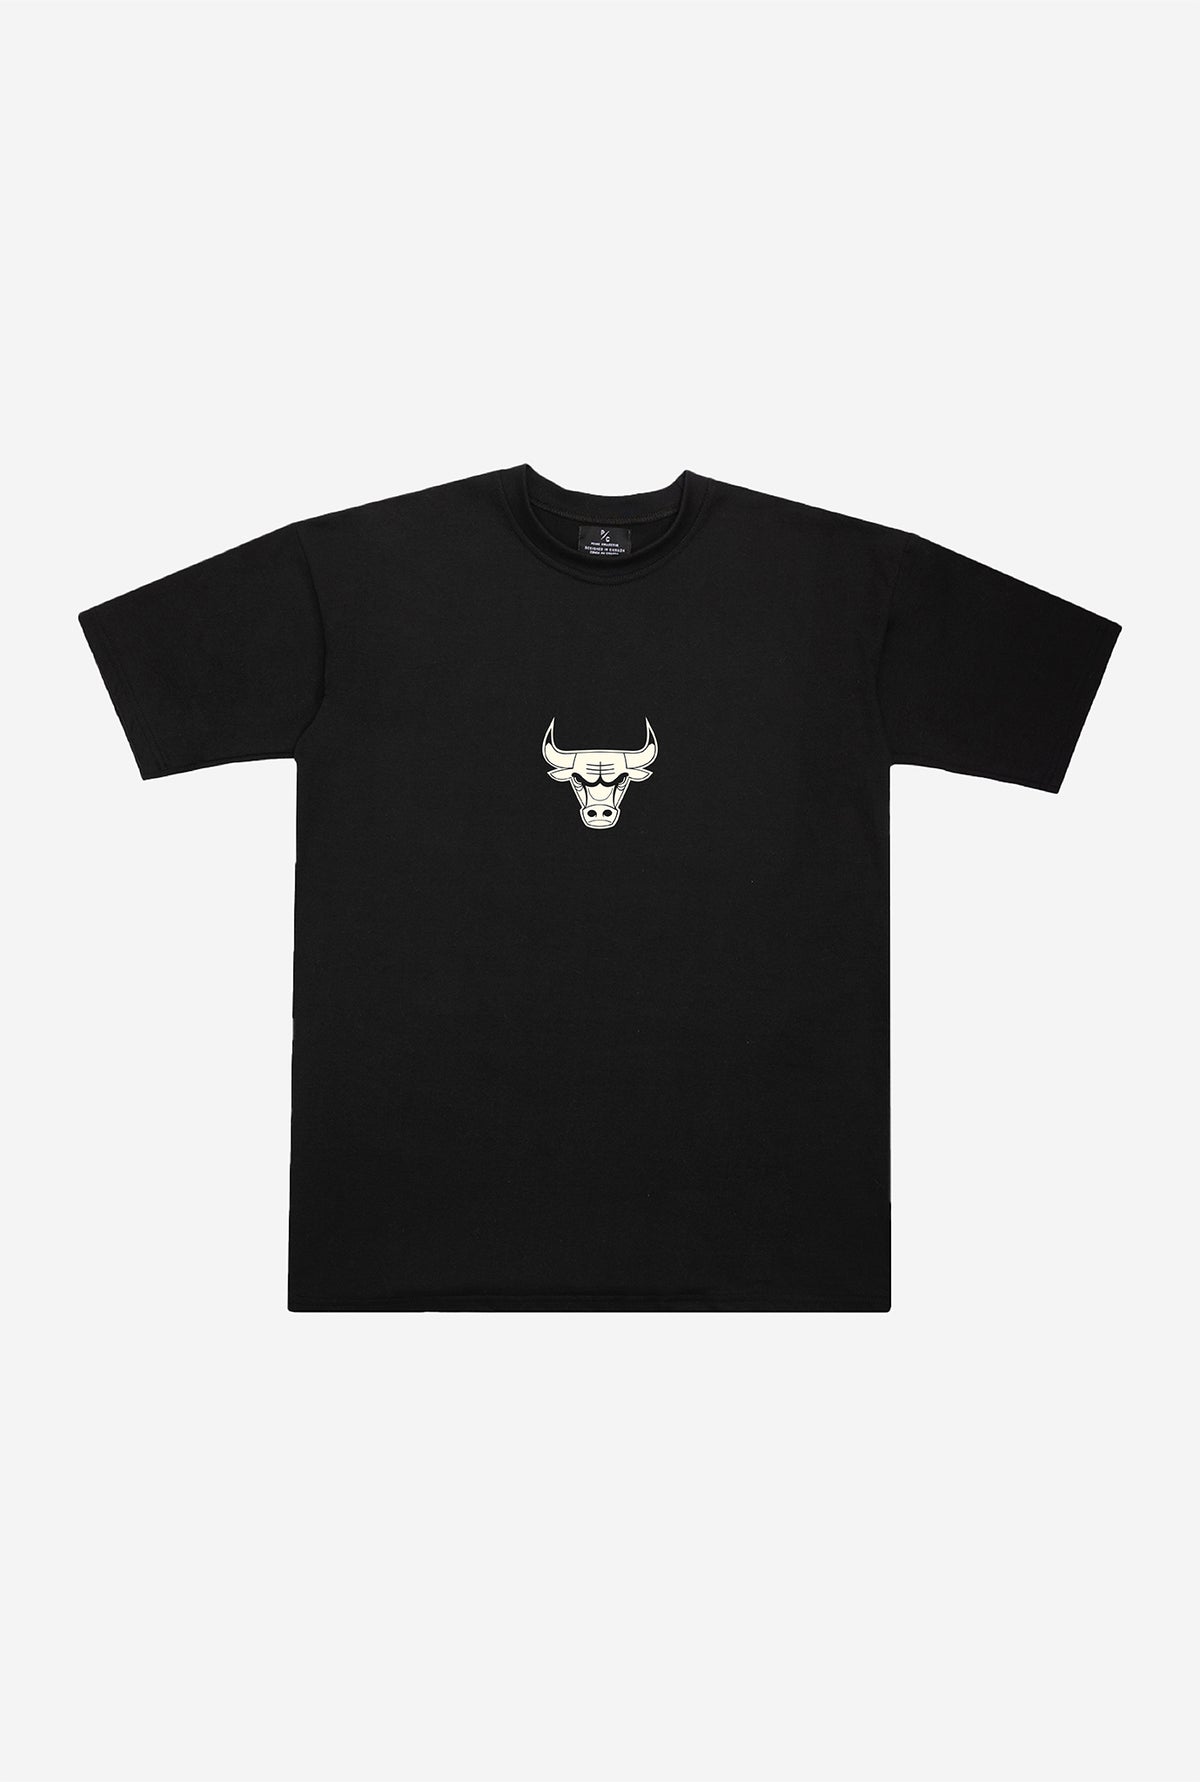 Chicago Bulls Premium Heavyweight T-Shirt - Black